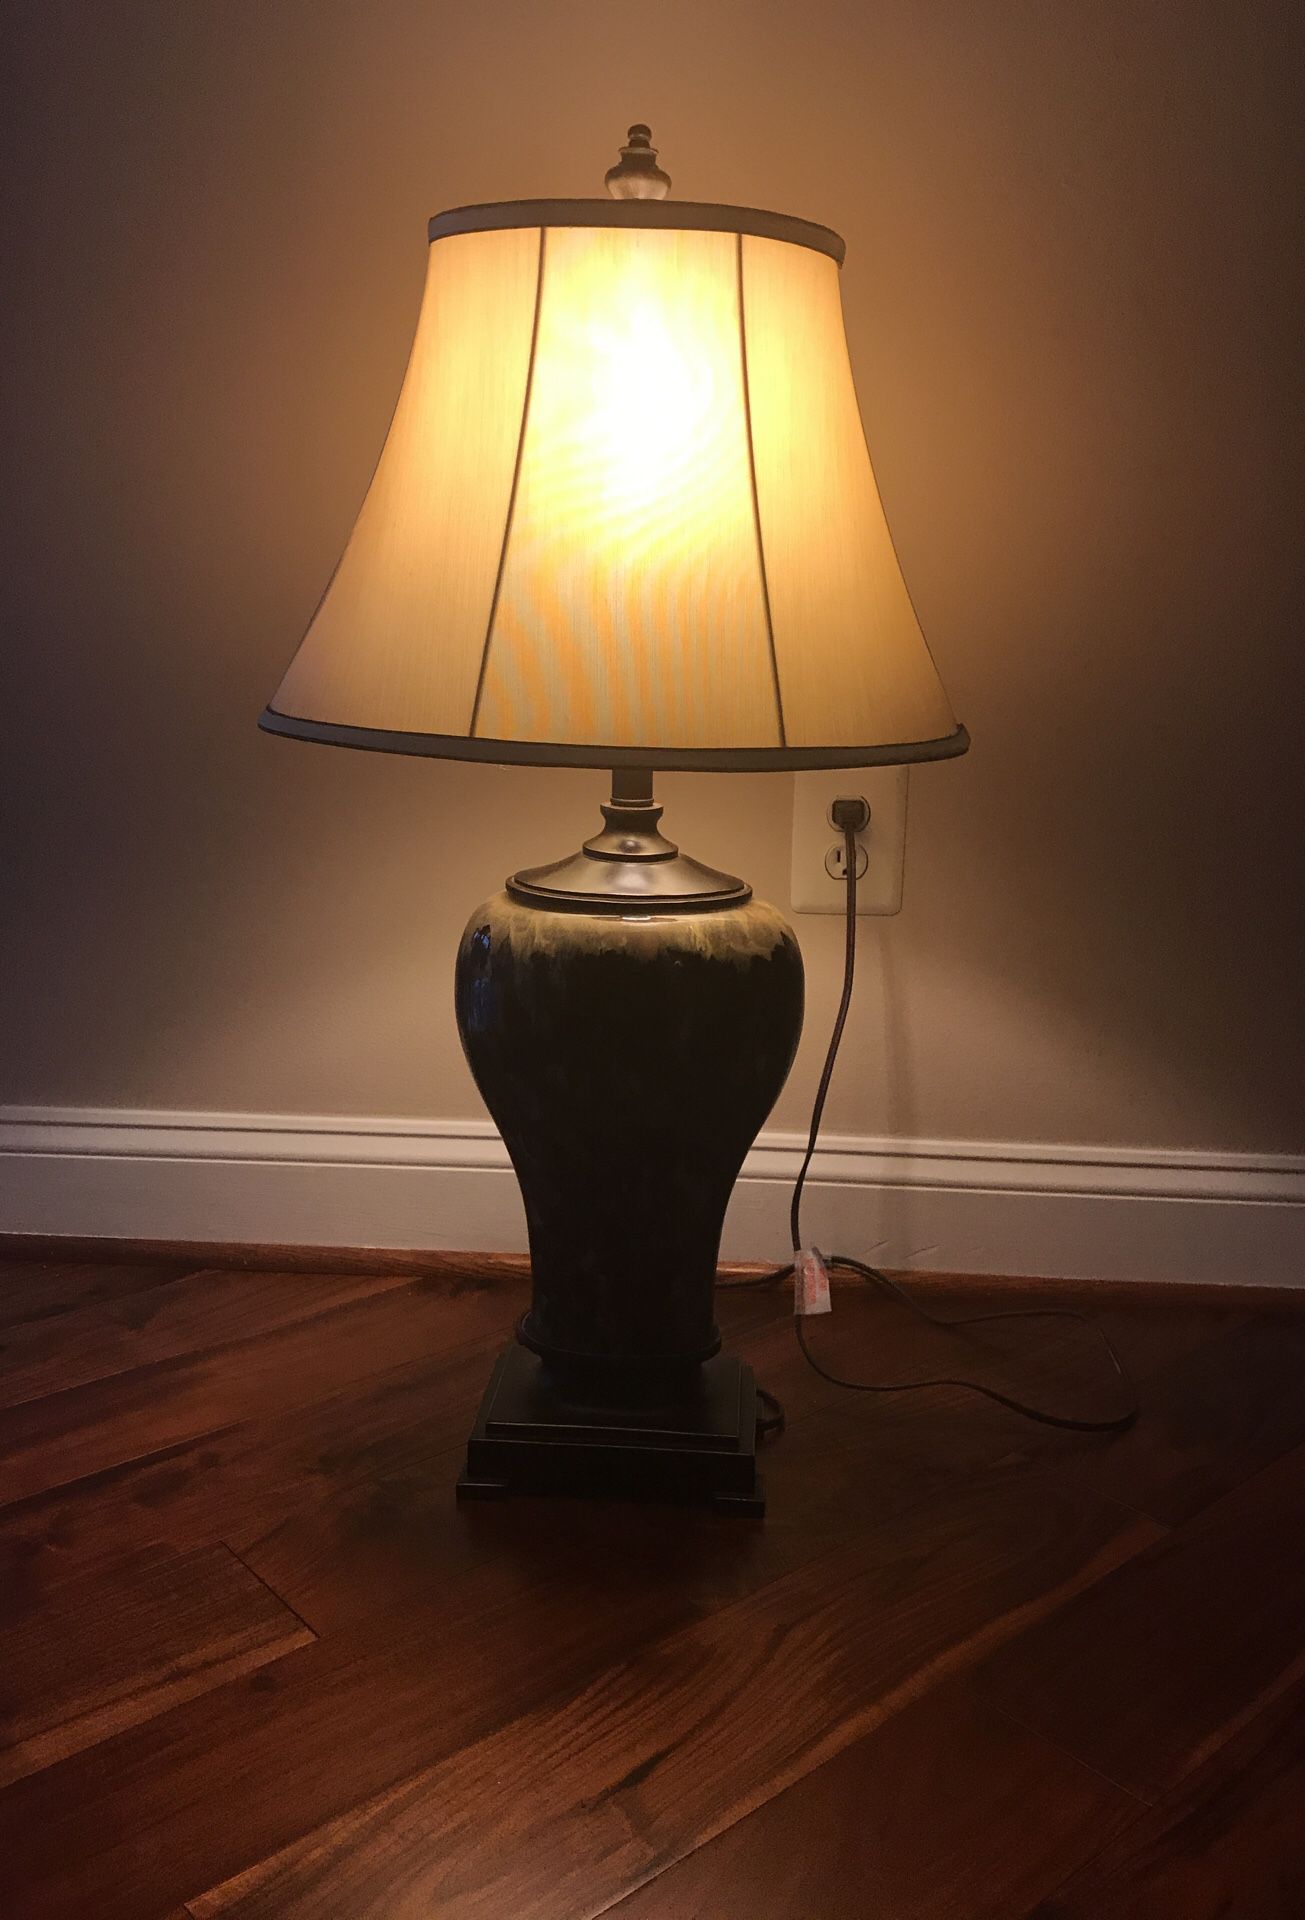 Beautiful lamp $10